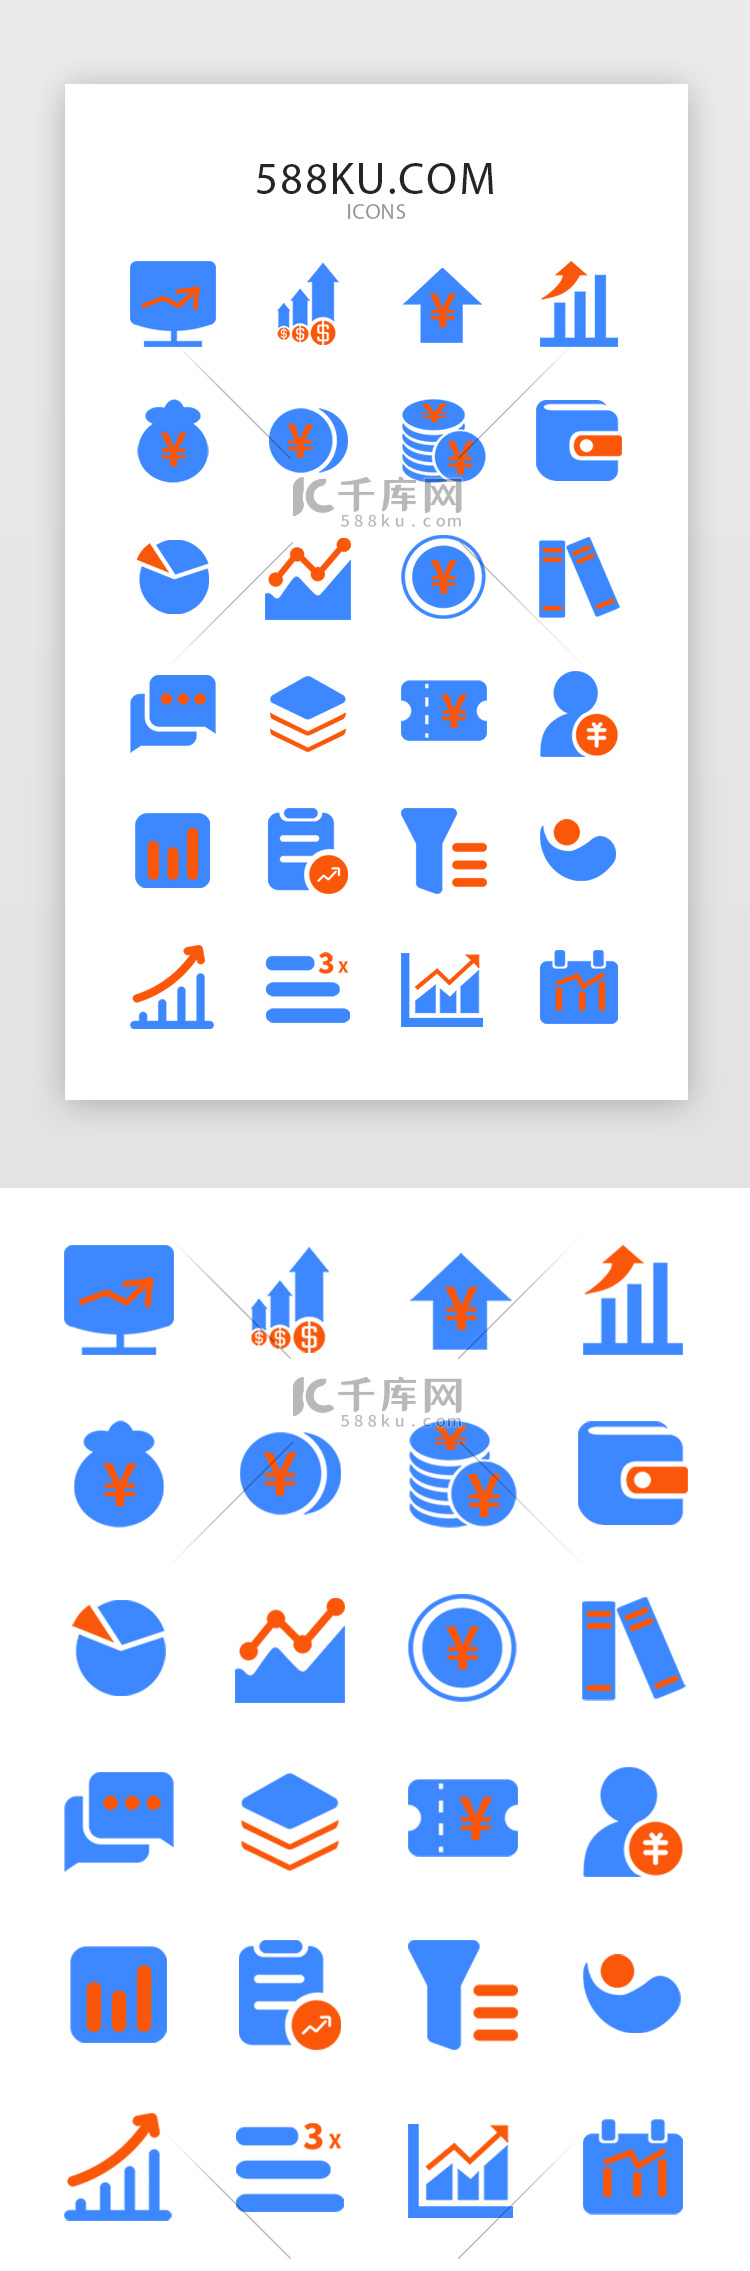 蓝色系金融APP常用矢量图标icon